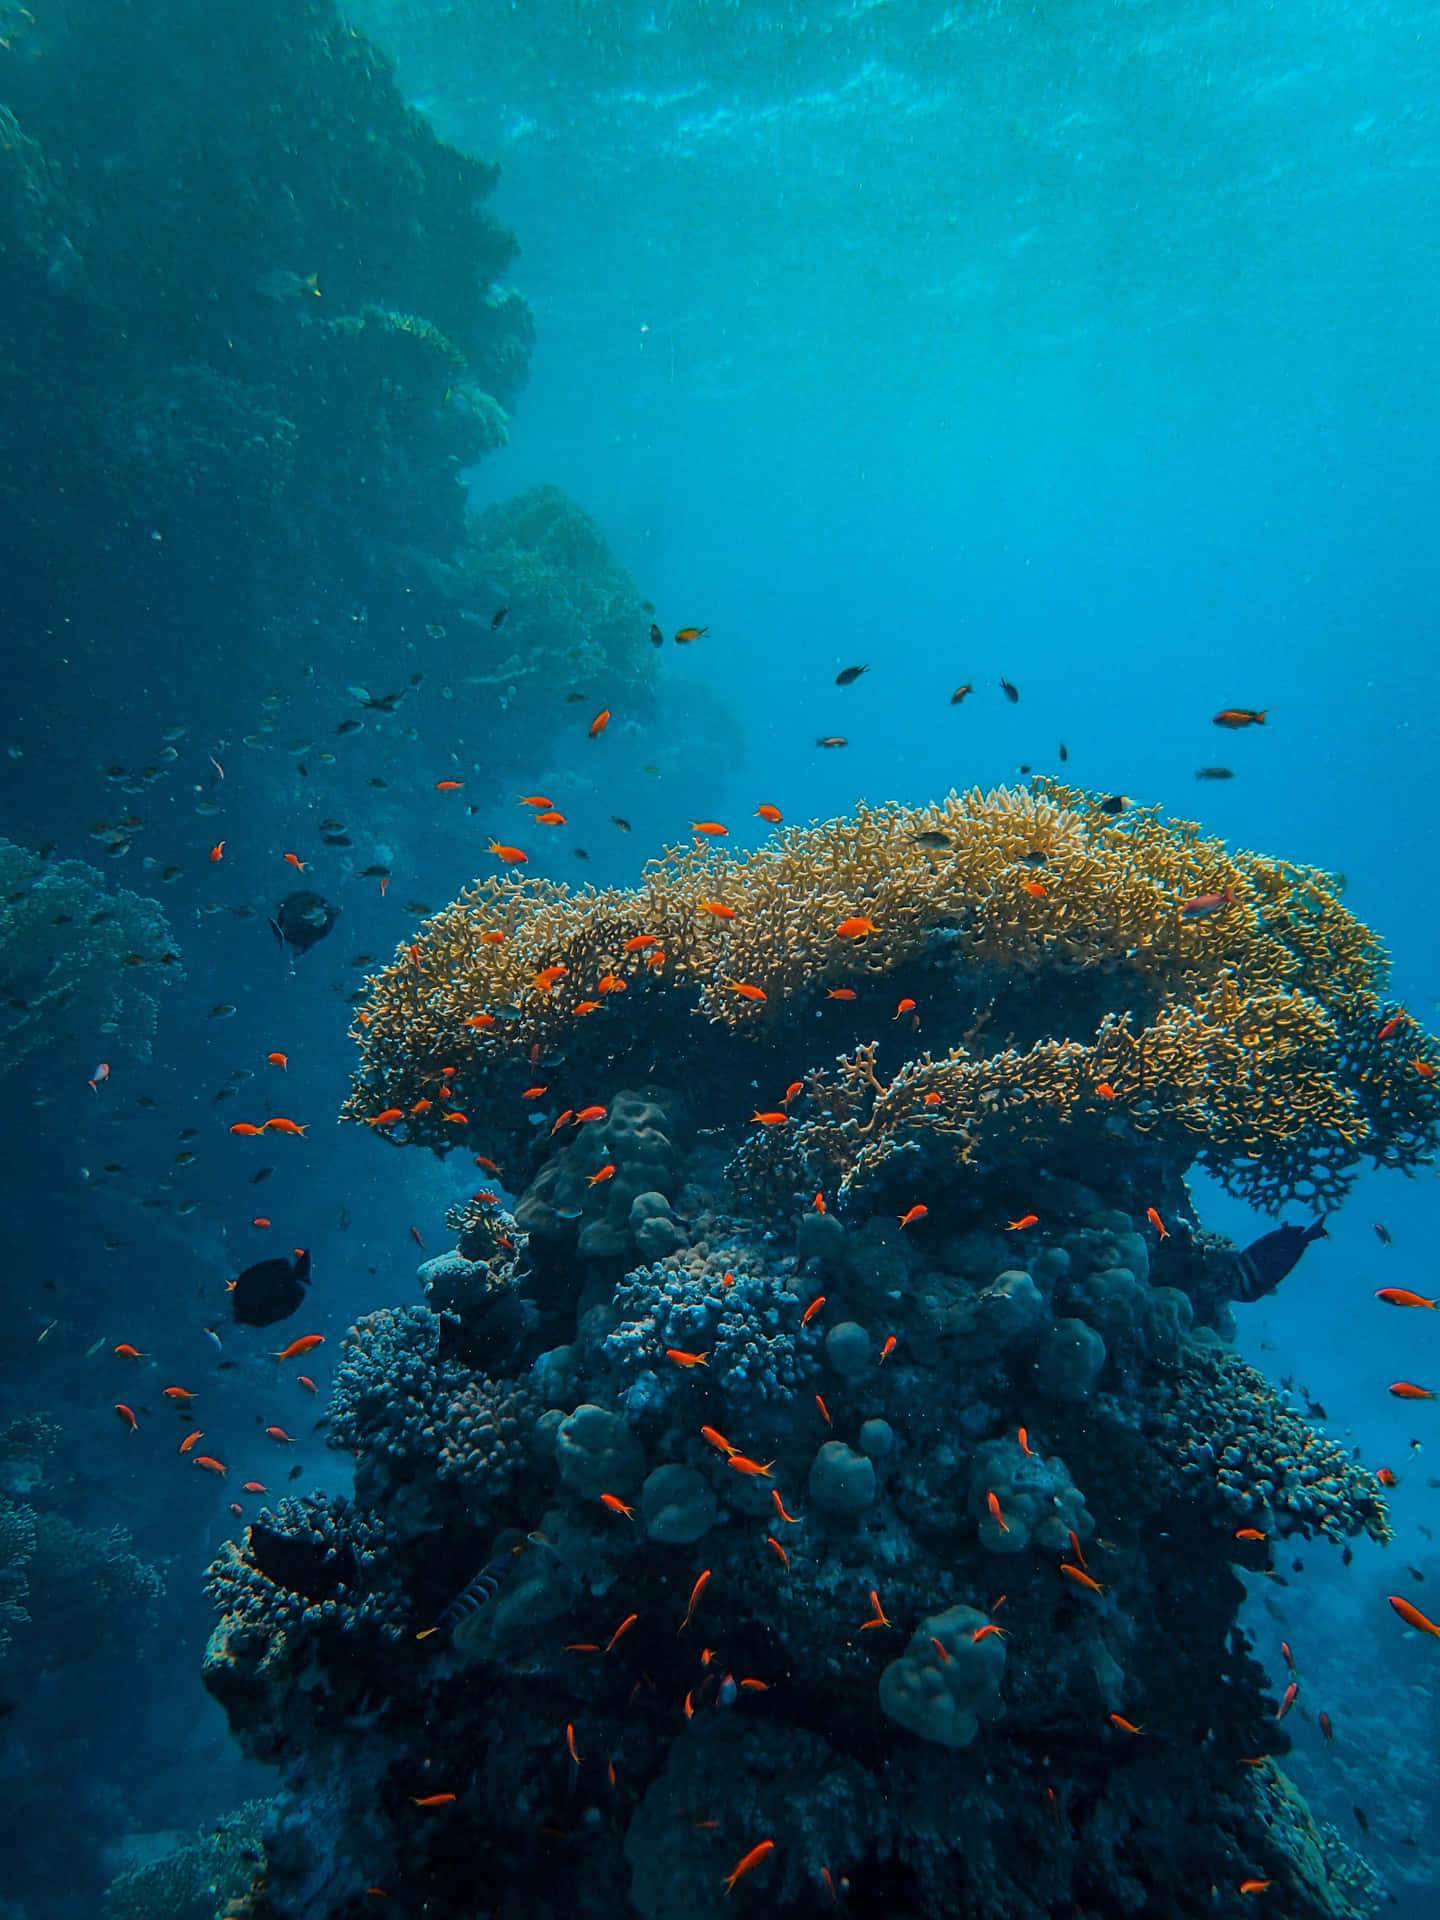 Et koralrev af billeder suspenderet inden for en aquamarin horisont